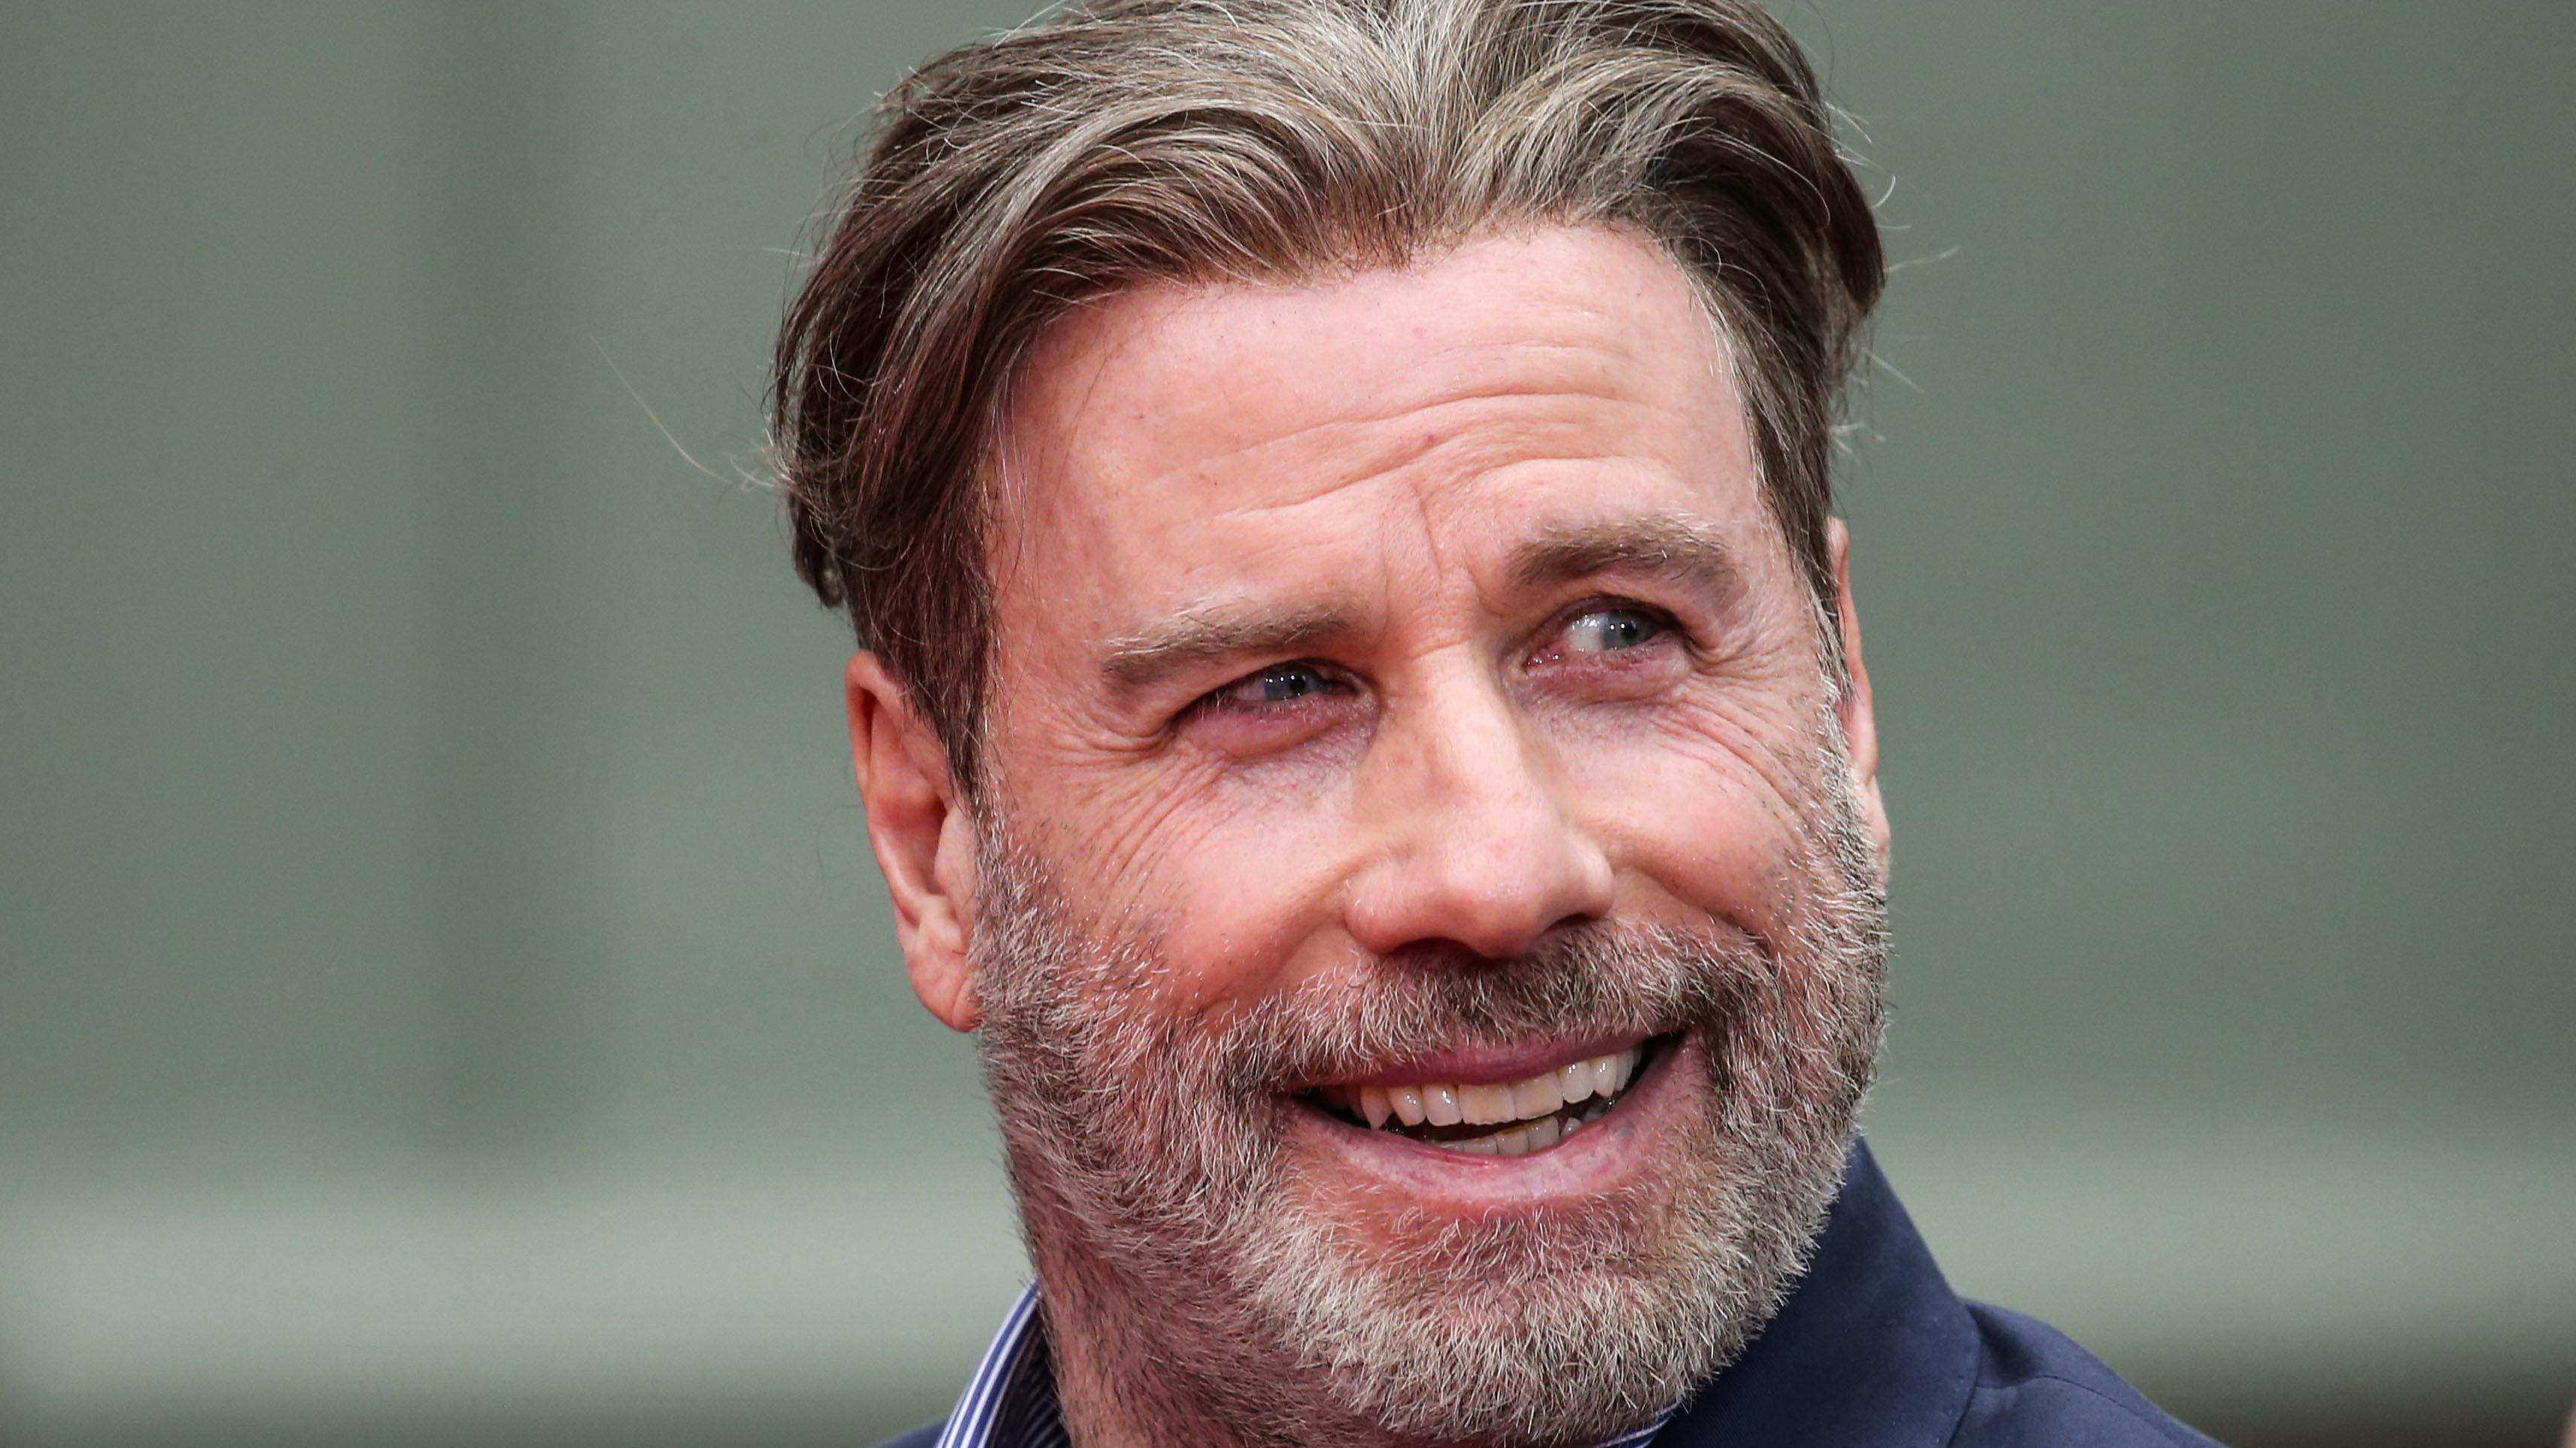 Ik heb een contract gemaakt Afvoer stimuleren John Travolta toont kaal hoofd | Entertainment | Telegraaf.nl